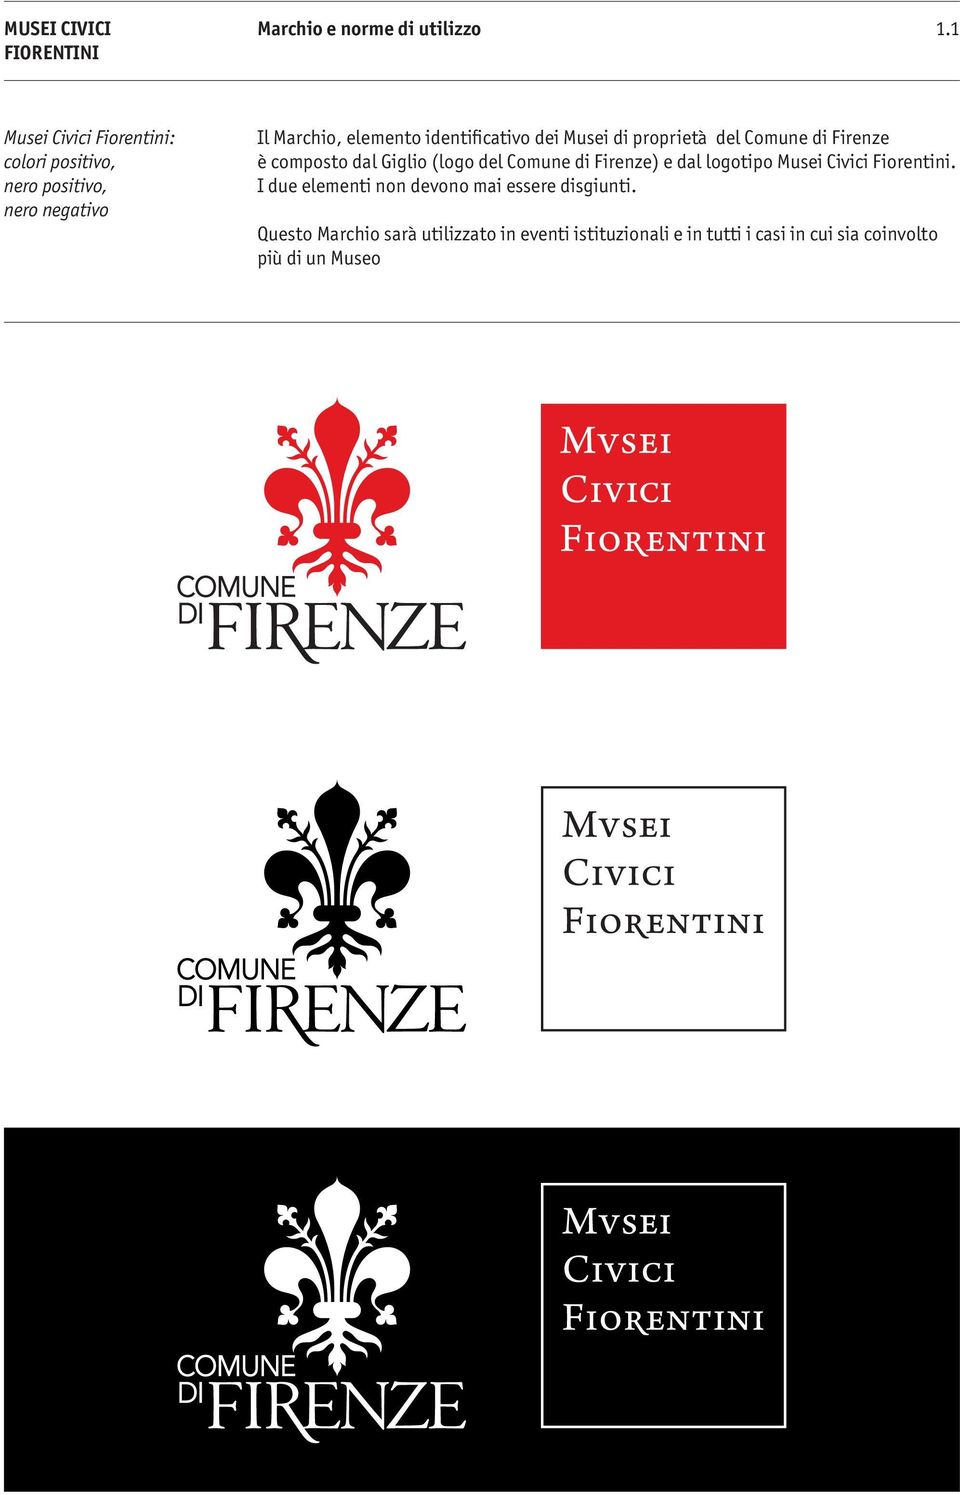 di Firenze) e dal logotipo Musei Civici Fiorentini. I due elementi non devono mai essere disgiunti.